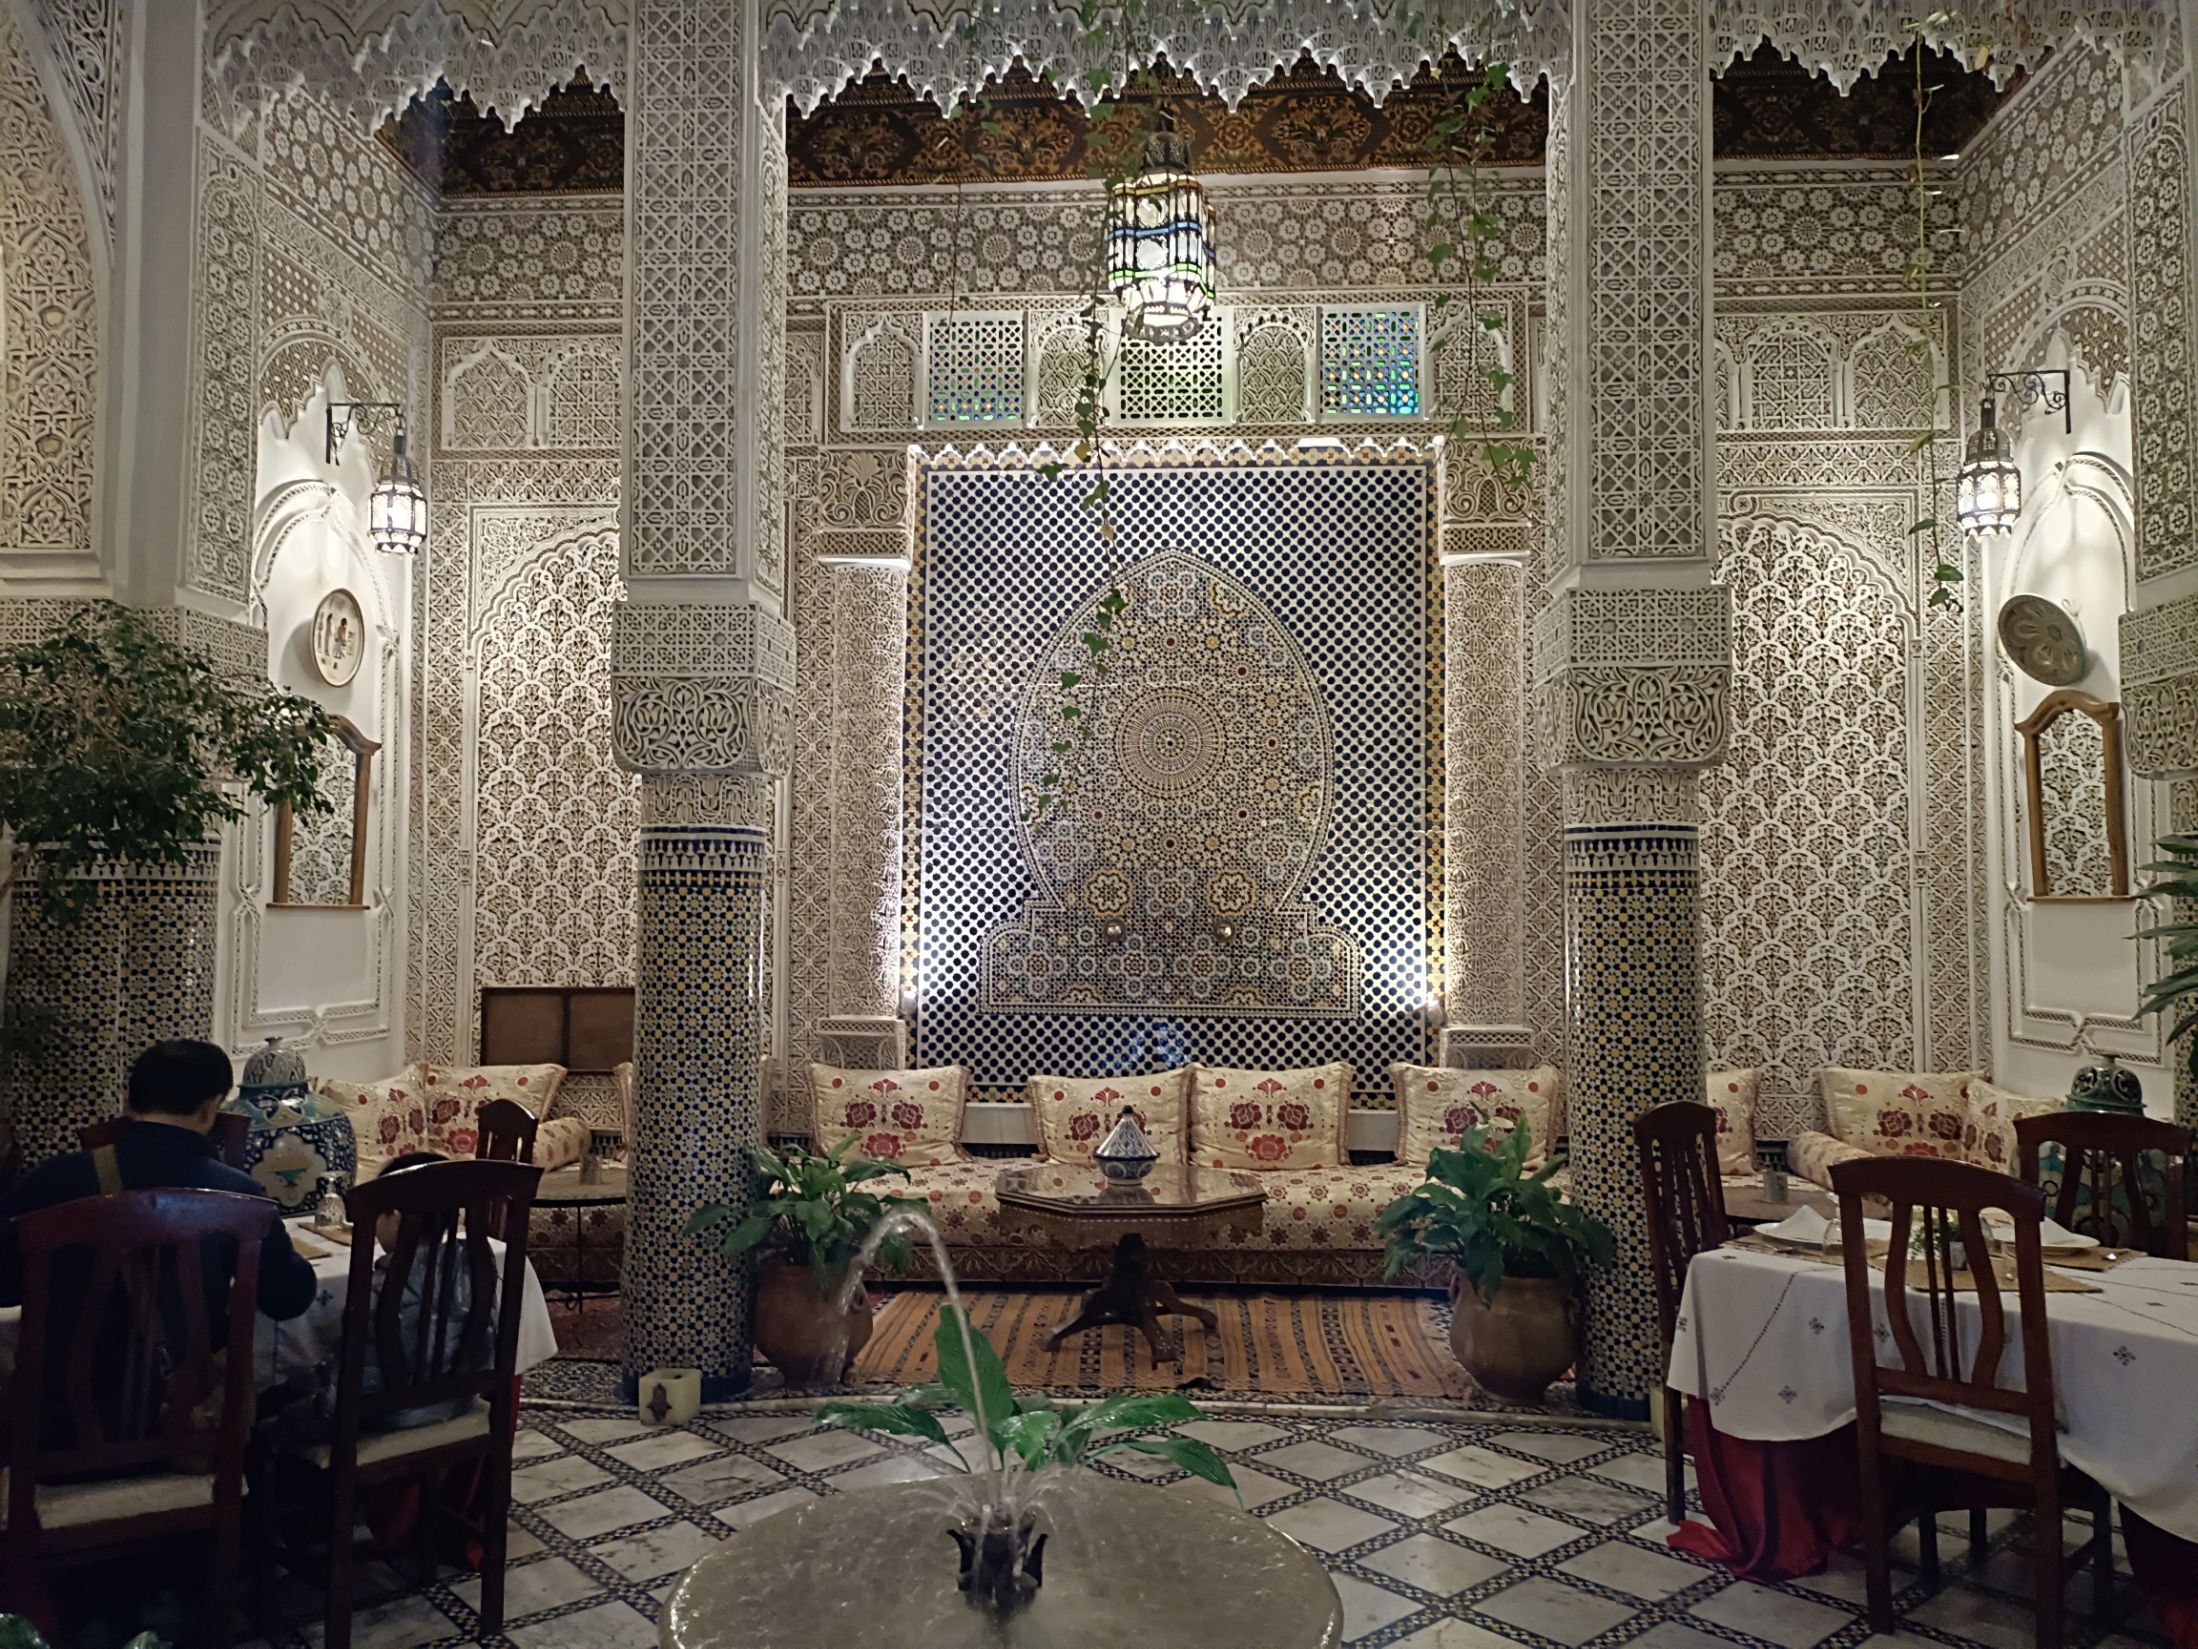 一个像皇宫一样的酒店，内部装饰琳琅满目，服务非常专业。在这里用晚餐可享受当地美味，炖牛排，摩洛哥沙拉